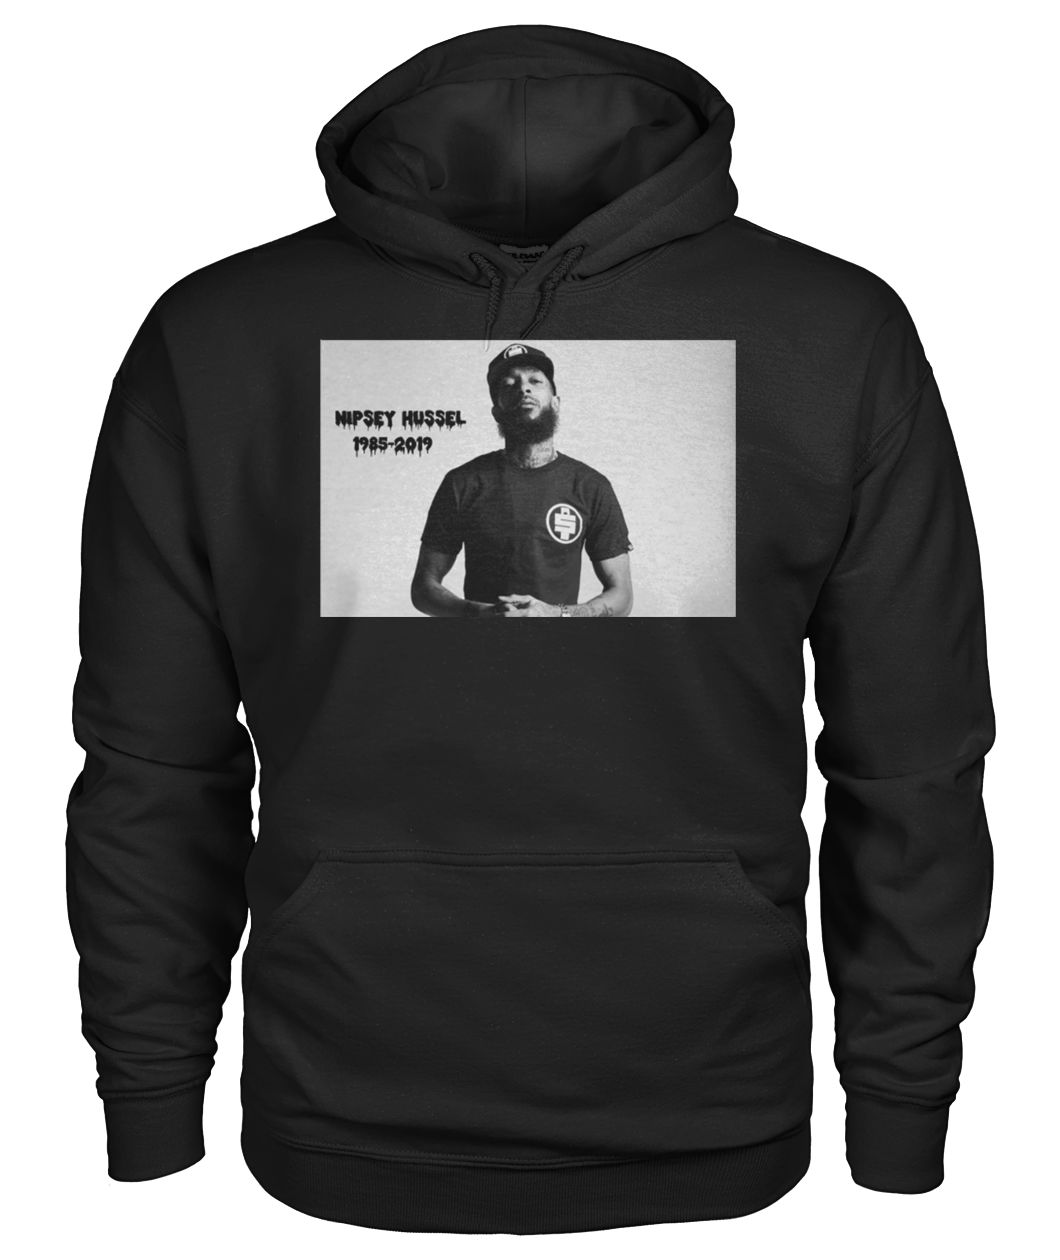 Nipsey Hussle 1985 2019 gildan hoodie